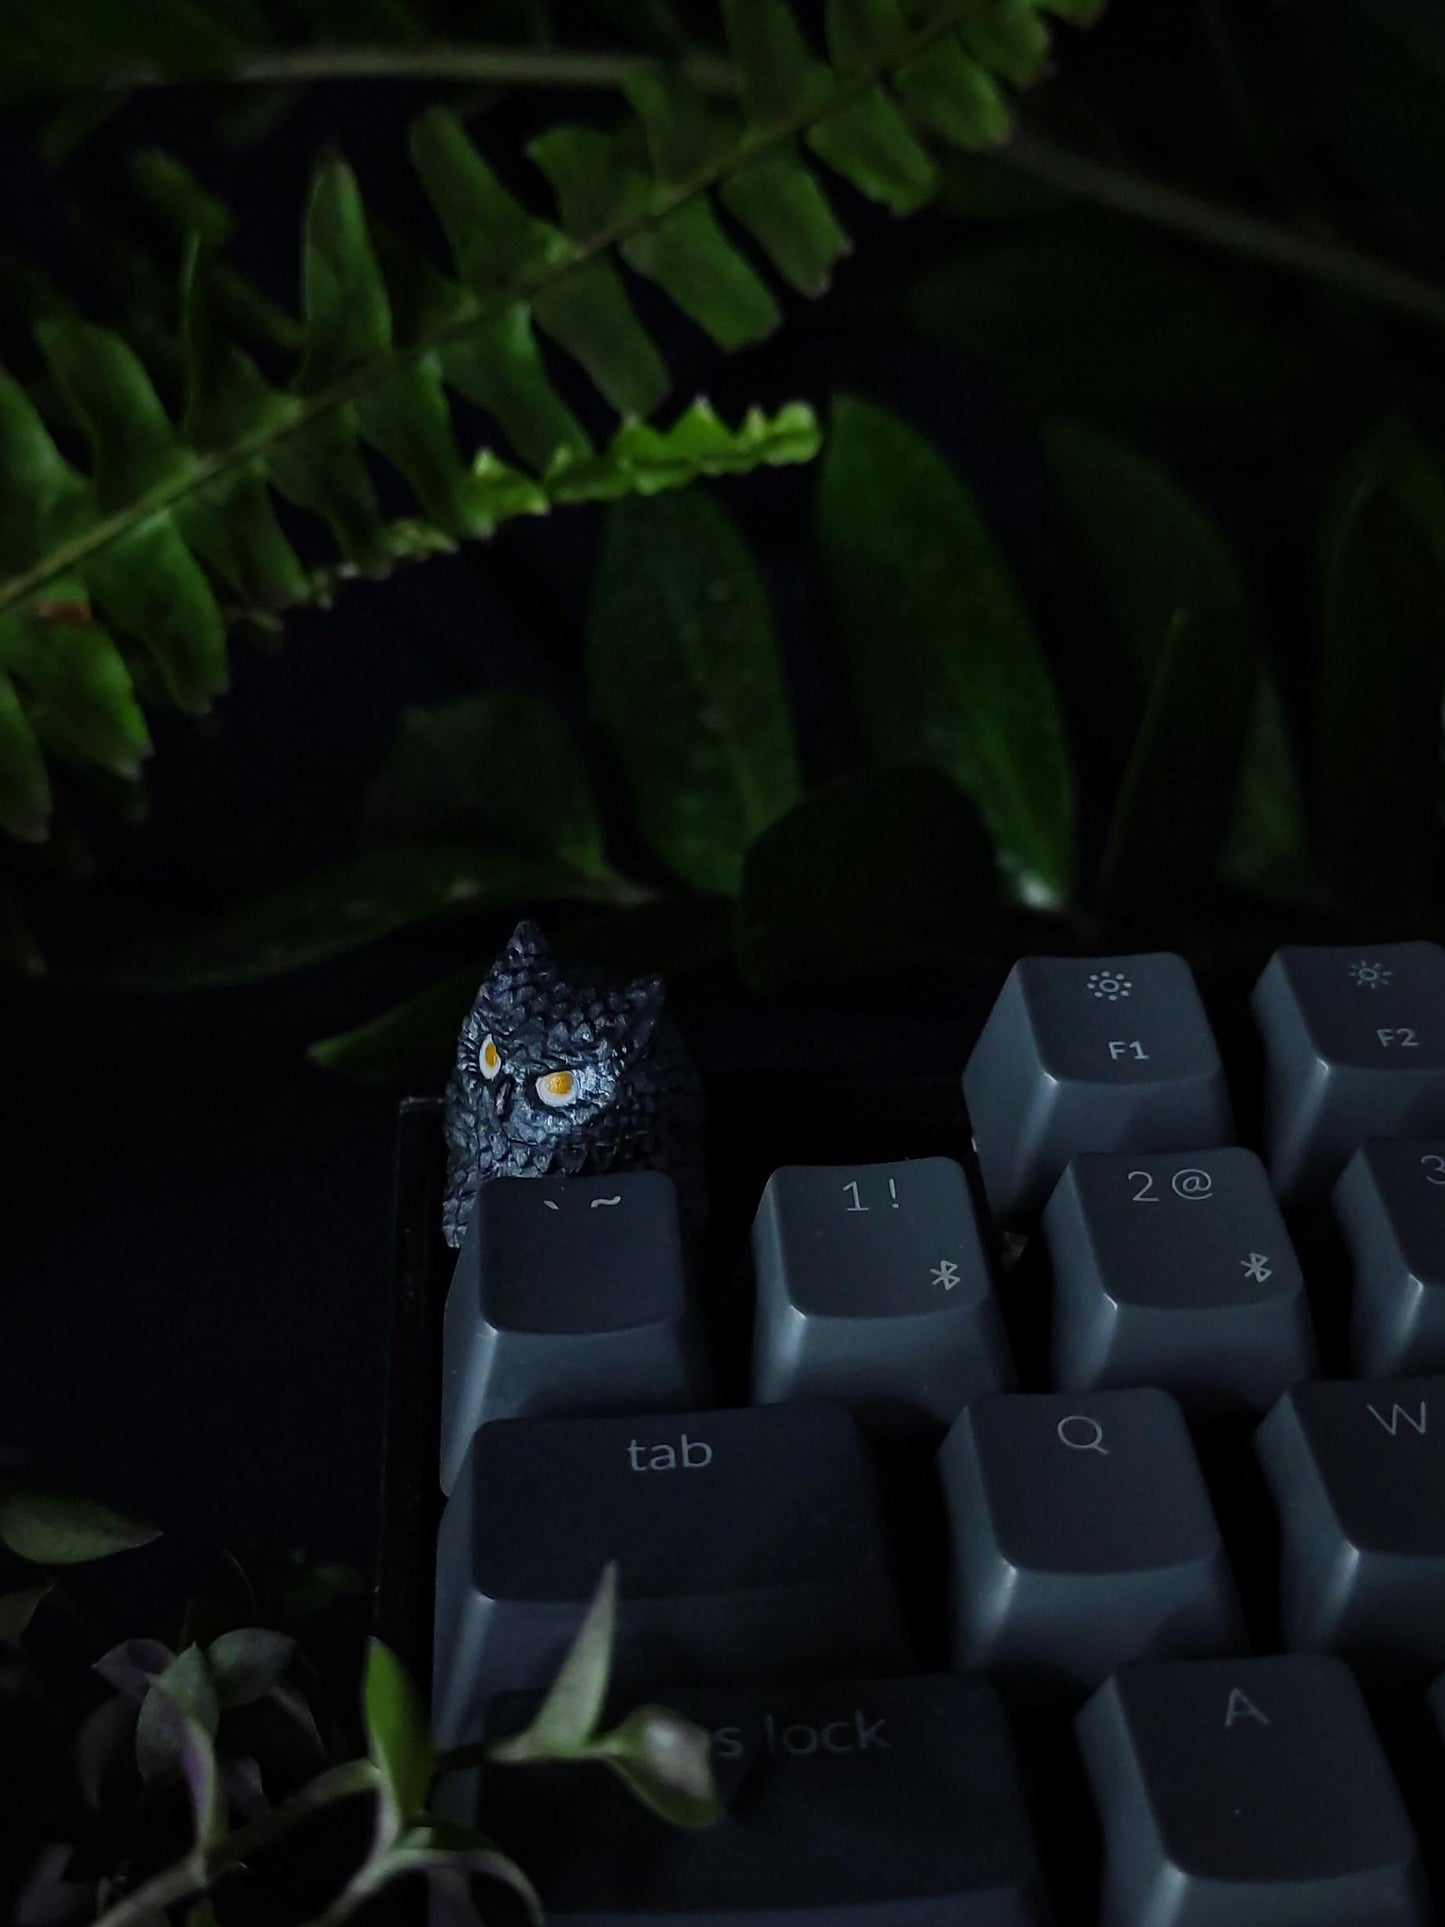 Owl artisan keycap #61